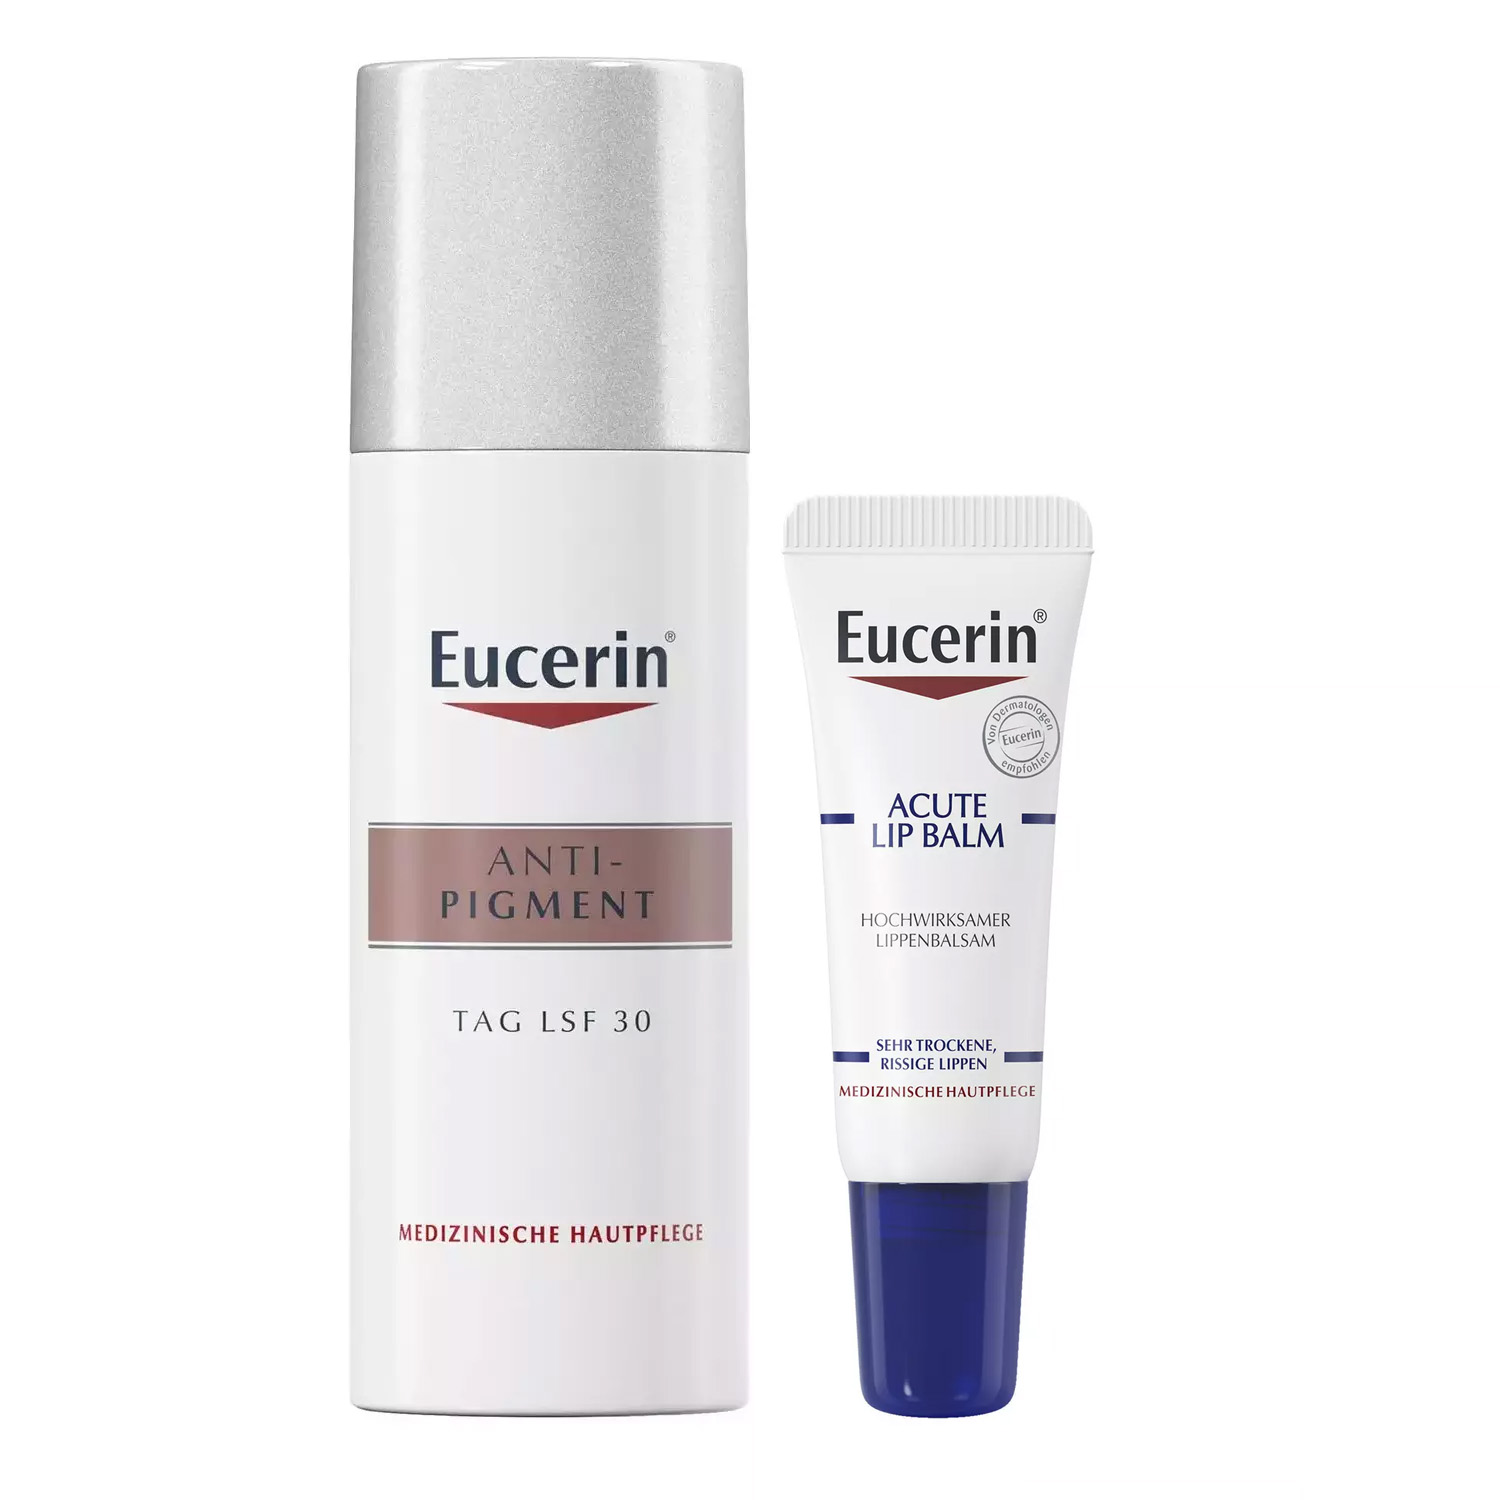 Eucerin Набор для ухода за кожей: бальзам для губ, 10 мл + крем дневной SPF30+, 50 мл (Eucerin, Anti-Pigment) крем для лица eucerin ночной крем против пигментации anti pigment